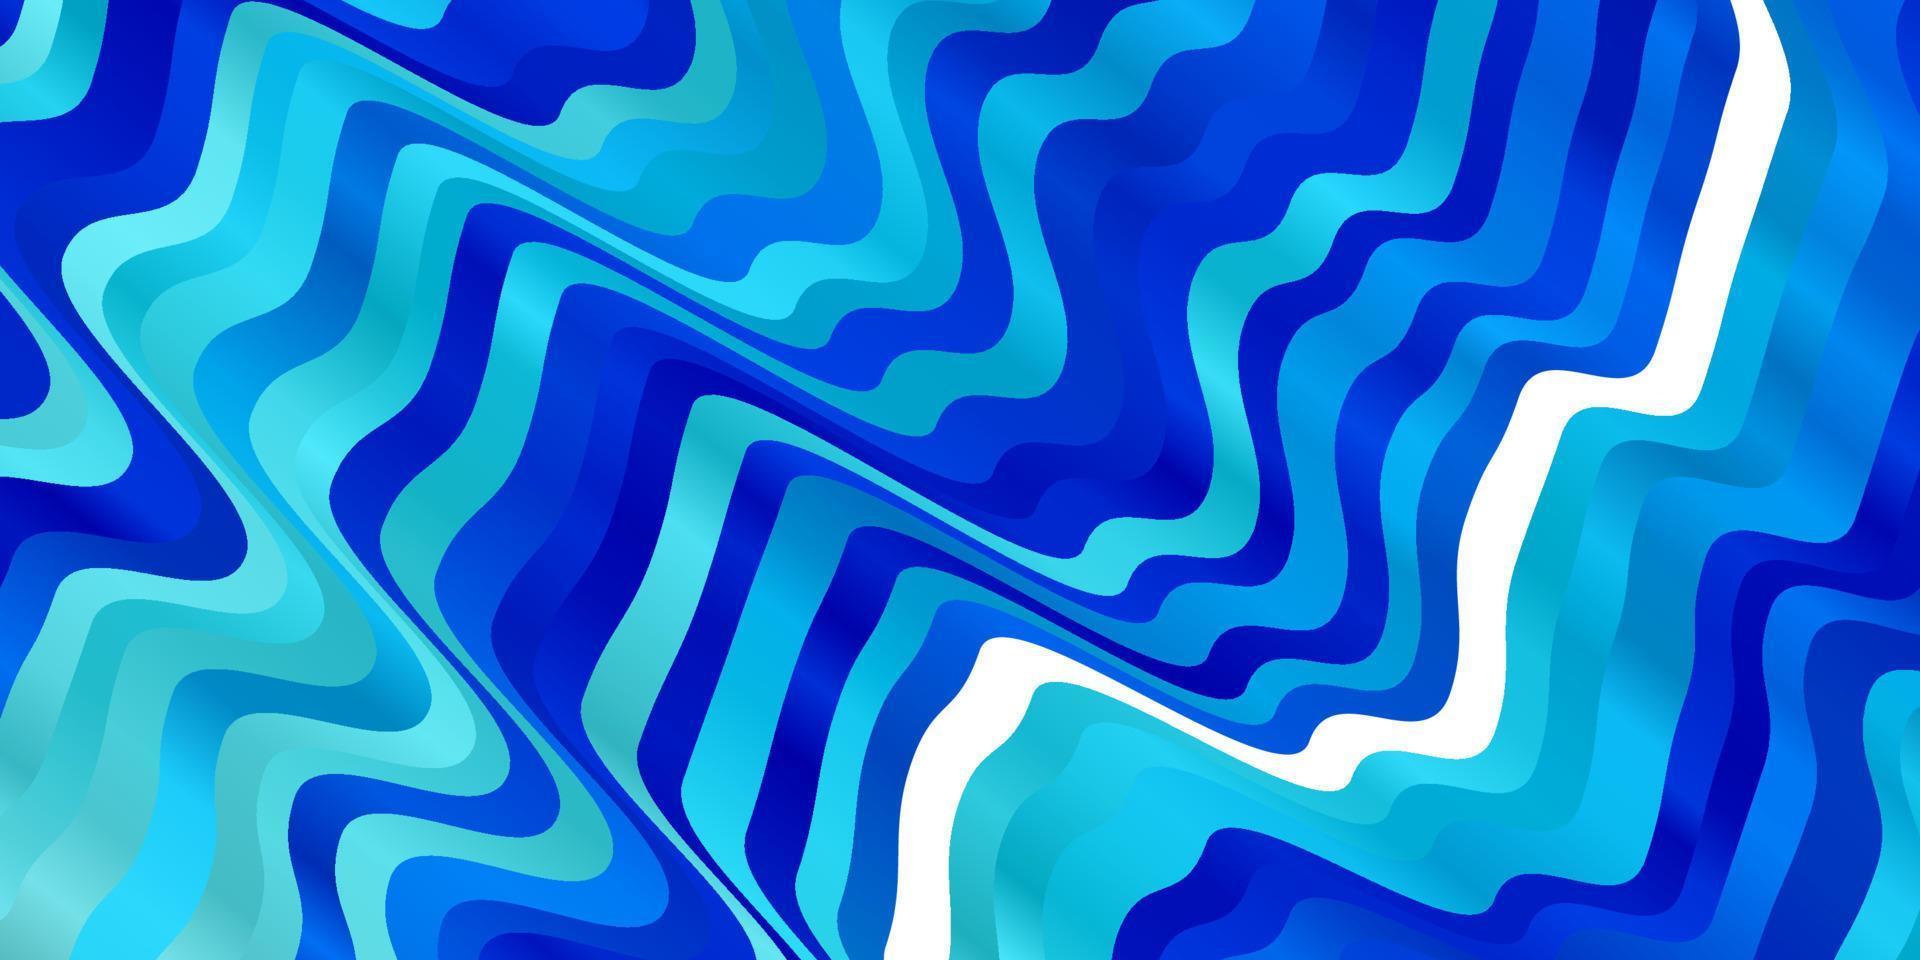 sfondo vettoriale azzurro con linee piegate.